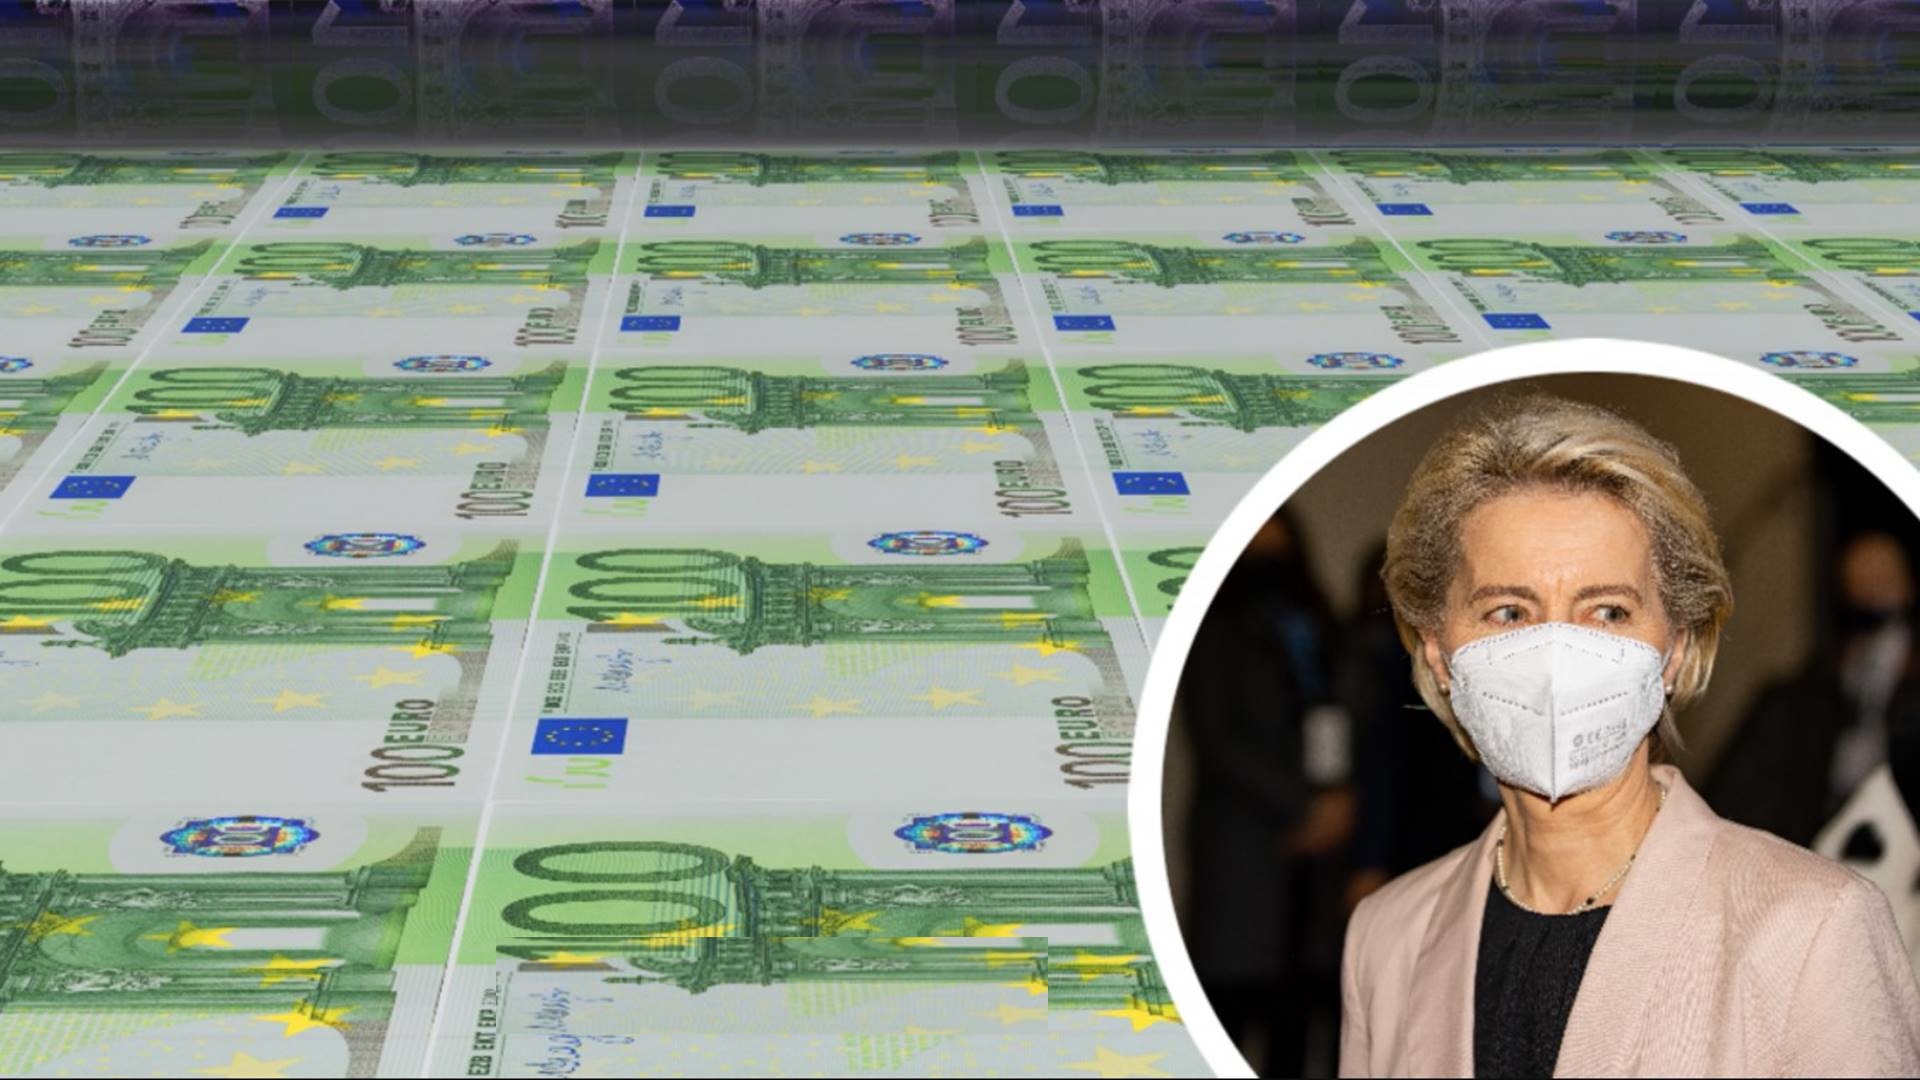 Ursula Von der Leyen: The EU aid was designed to help Ukraine during the conflict